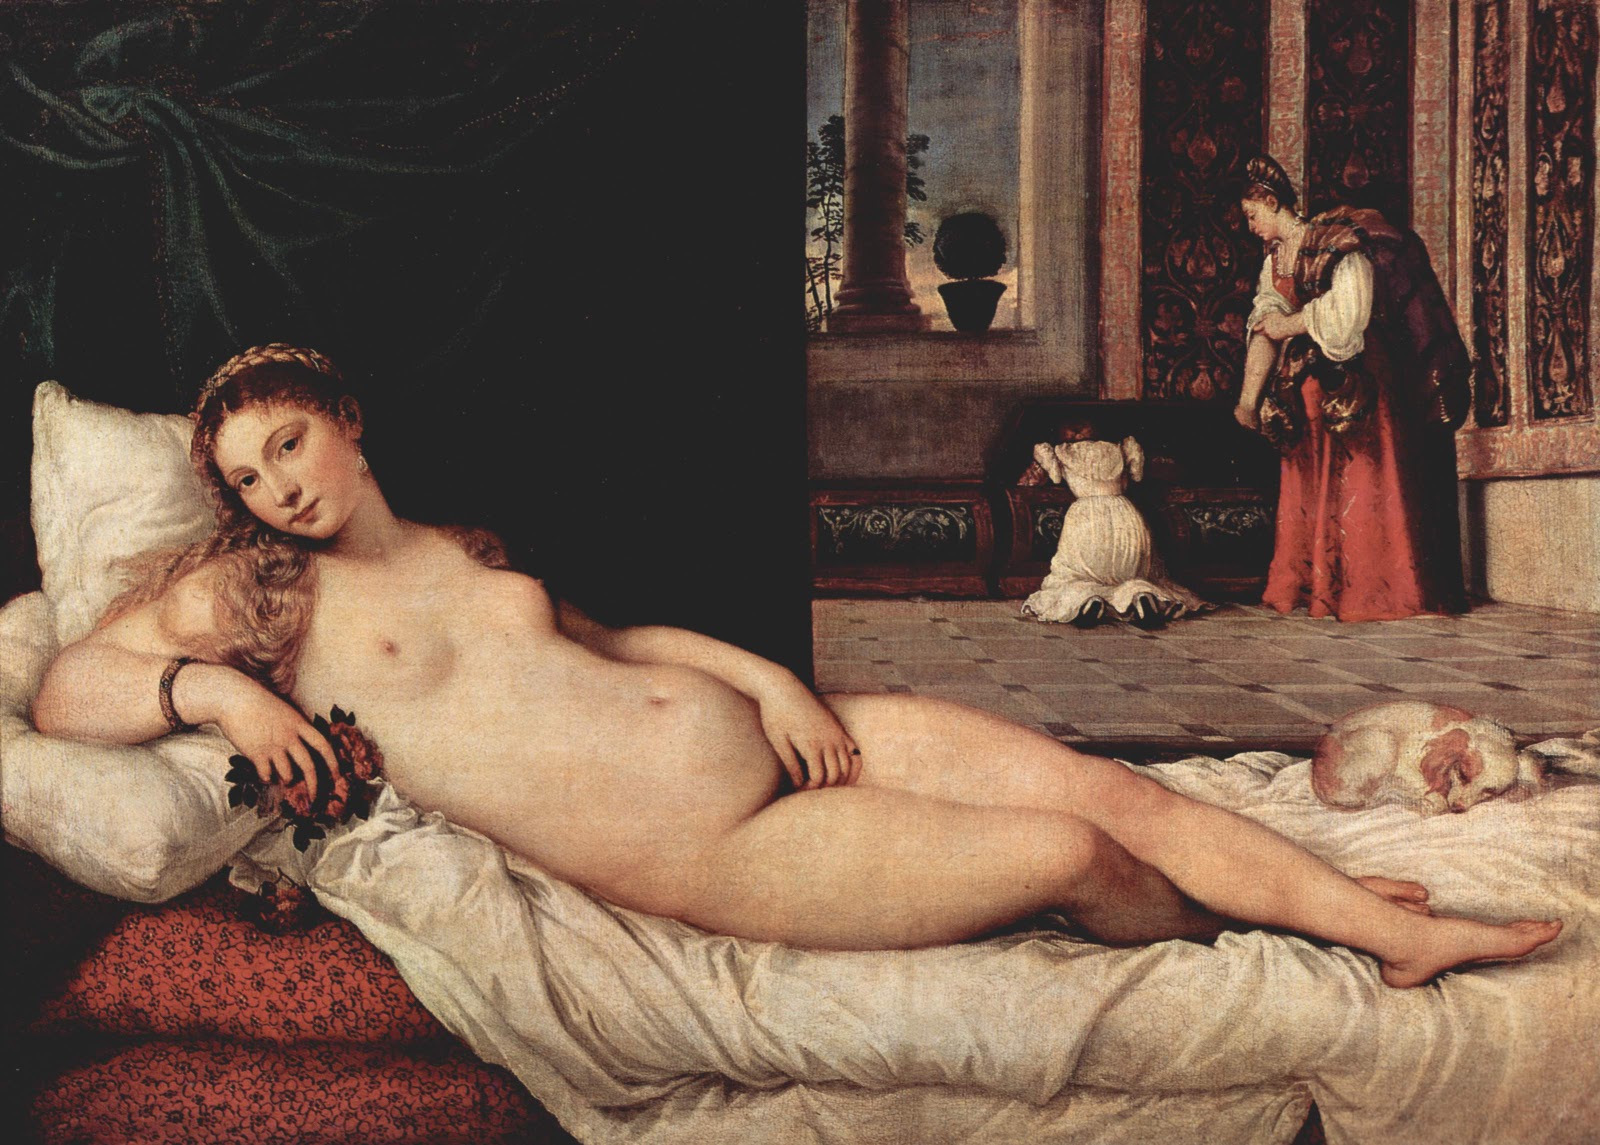 Pongan un cuadro en su vida - Página 4 Tiziano+-+La+Venus+de+Urbino2+-+1538+-+Galeria+degli+Uffici